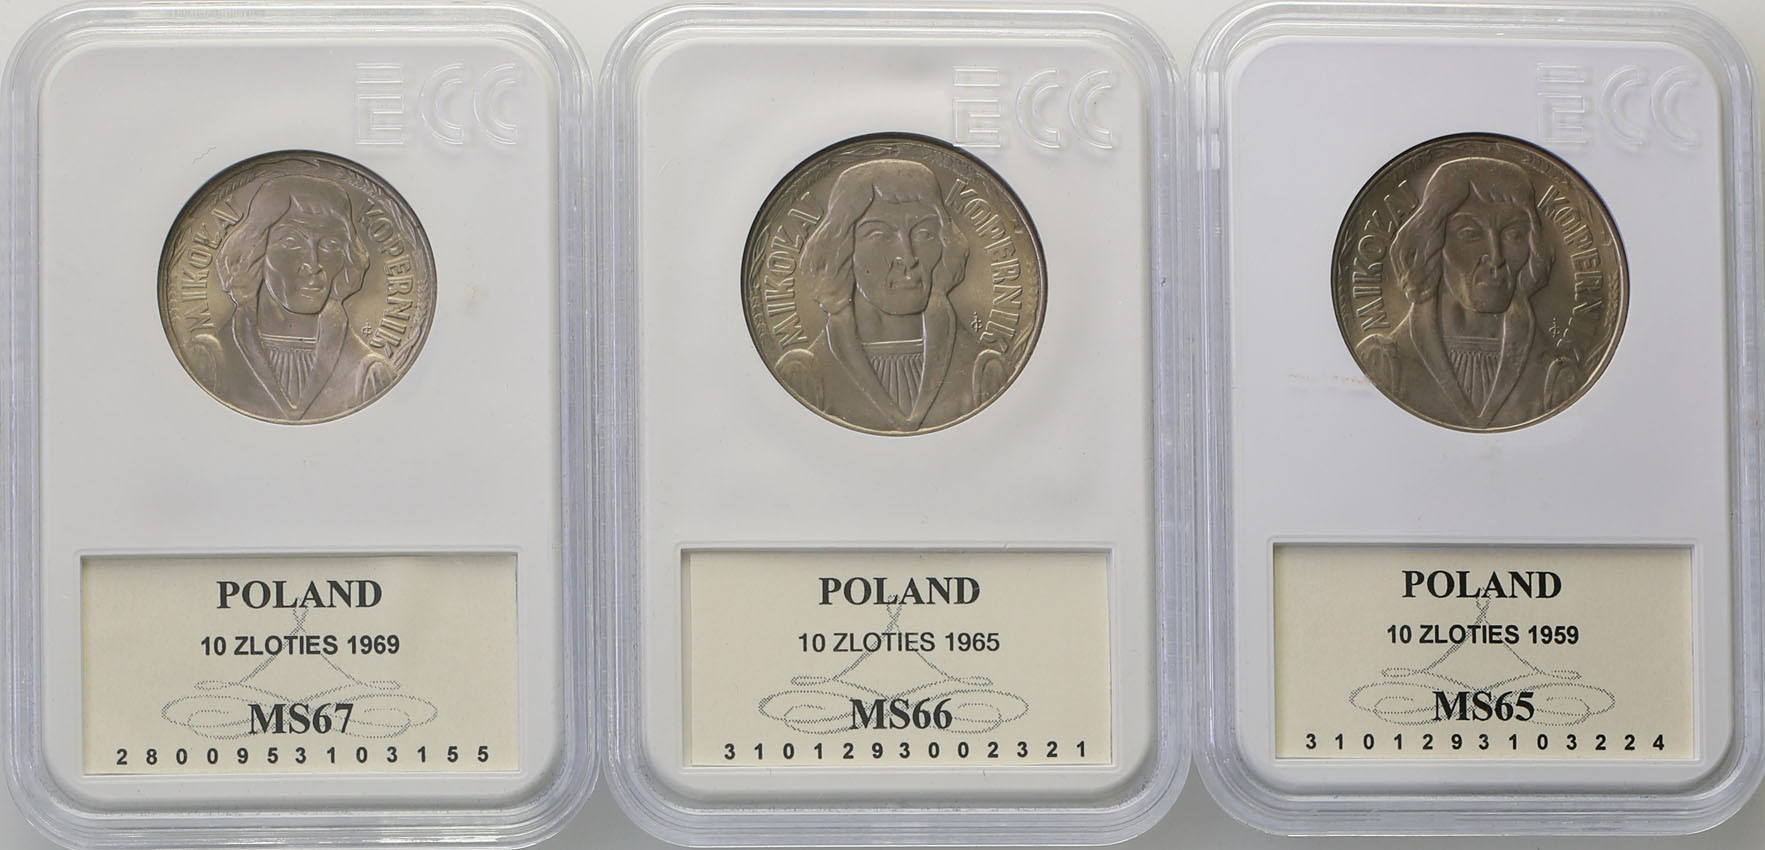 PRL. Zestaw monet 10 złotych M. Kopernik 1959, 1965, 1969 - 3 sztuki